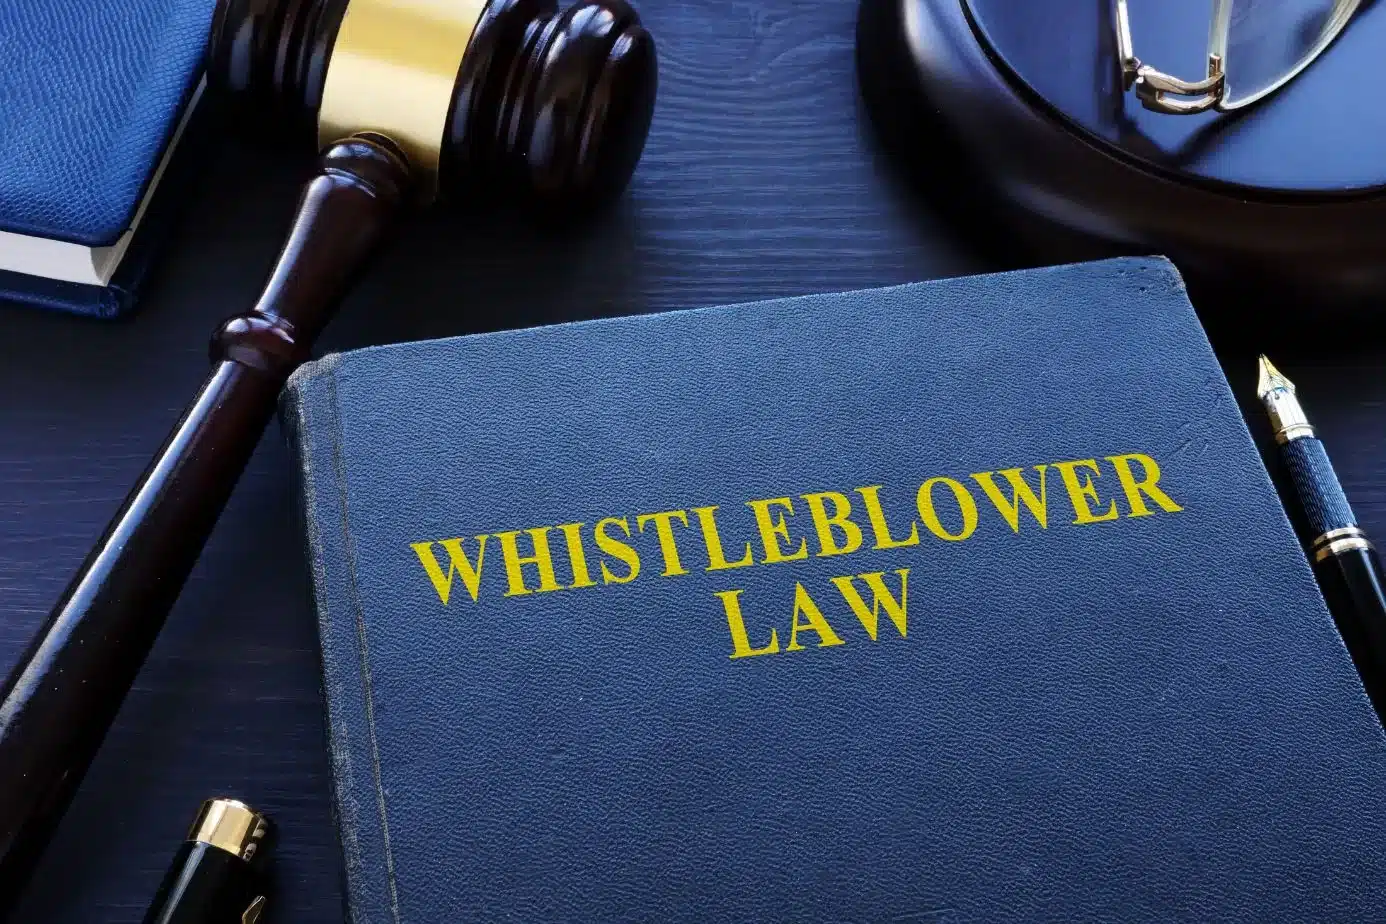 Hvorfor er det vigtigt at få en whistleblower-ordning?